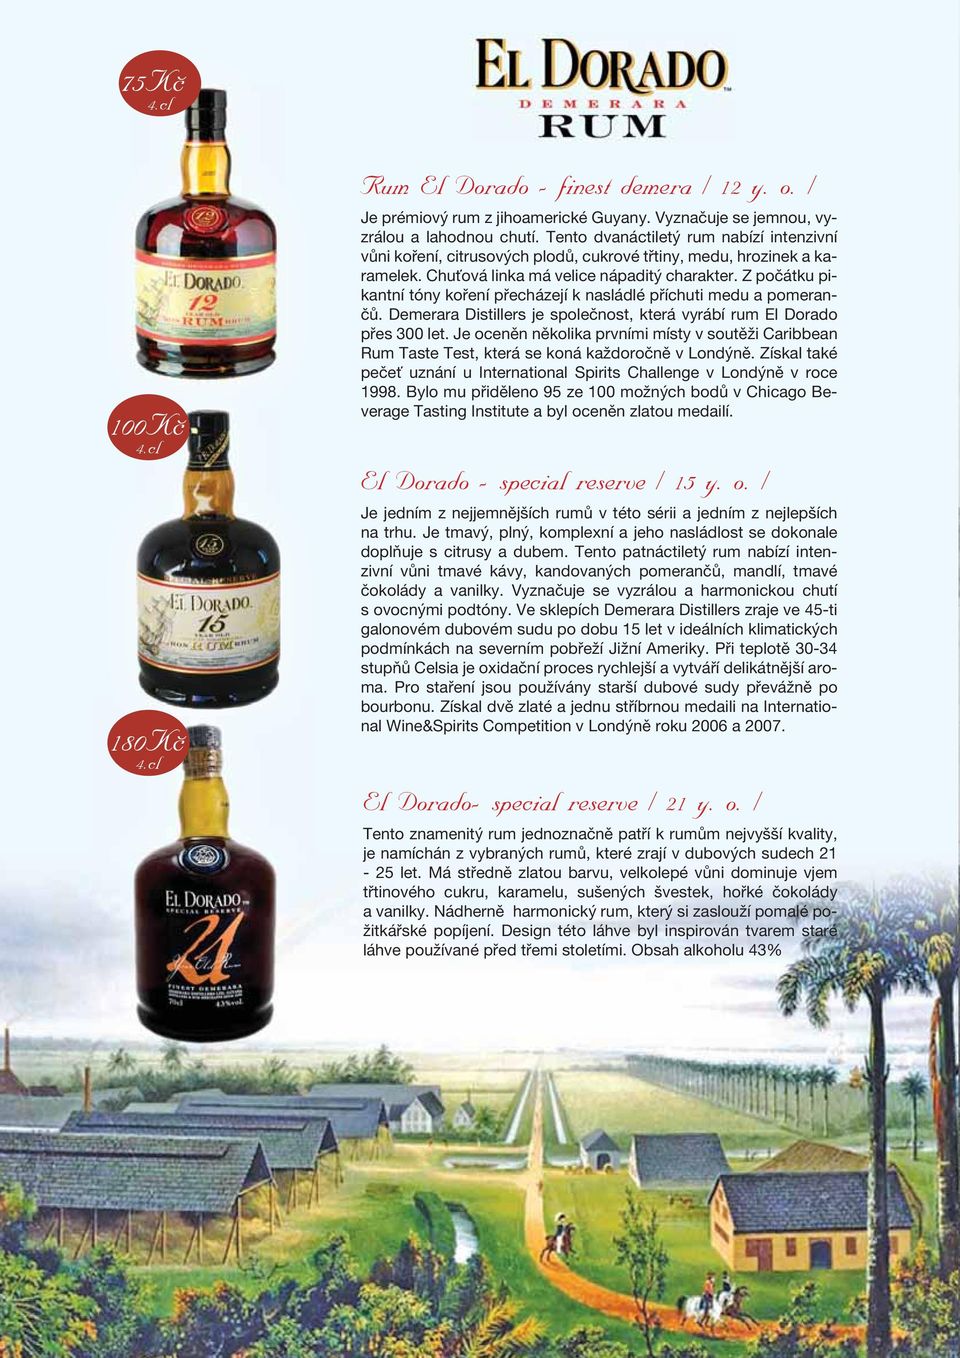 Z počátku pikantní tóny koření přecházejí k nasládlé příchuti medu a pomerančů. Demerara Distillers je společnost, která vyrábí rum El Dorado přes 300 let.